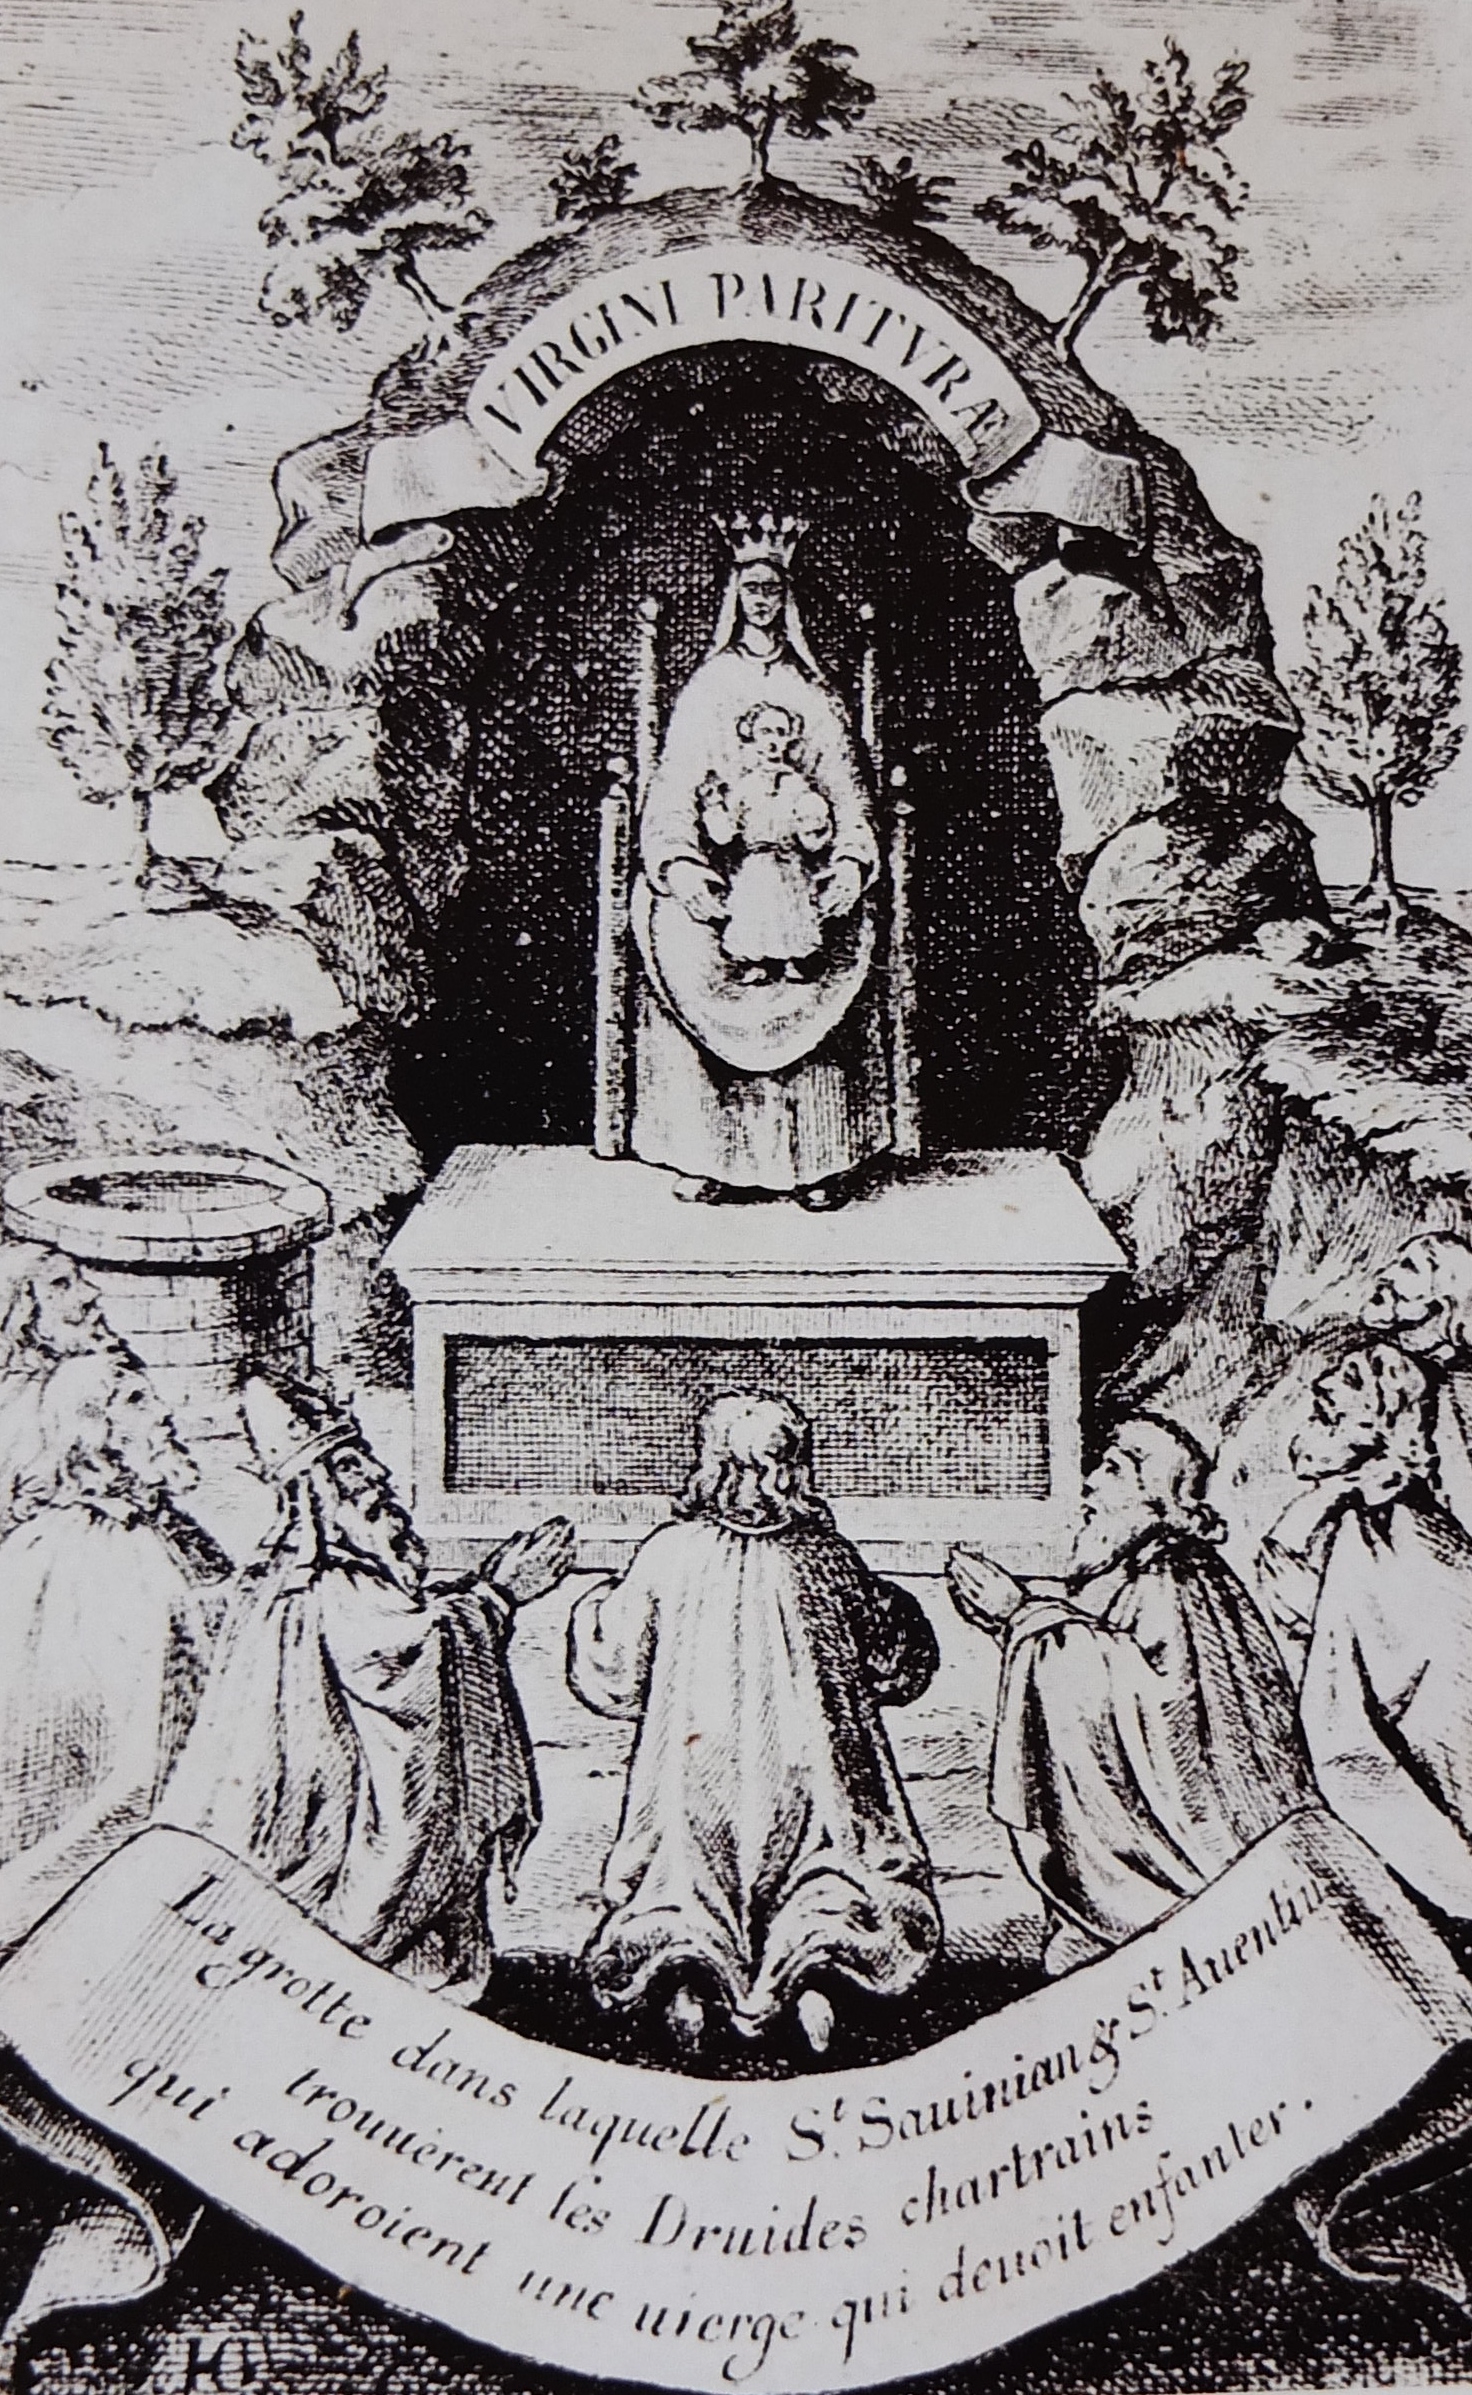 Virgini Parituræ ,et gammelt stik fra 1609, der viser druidernes tempel
